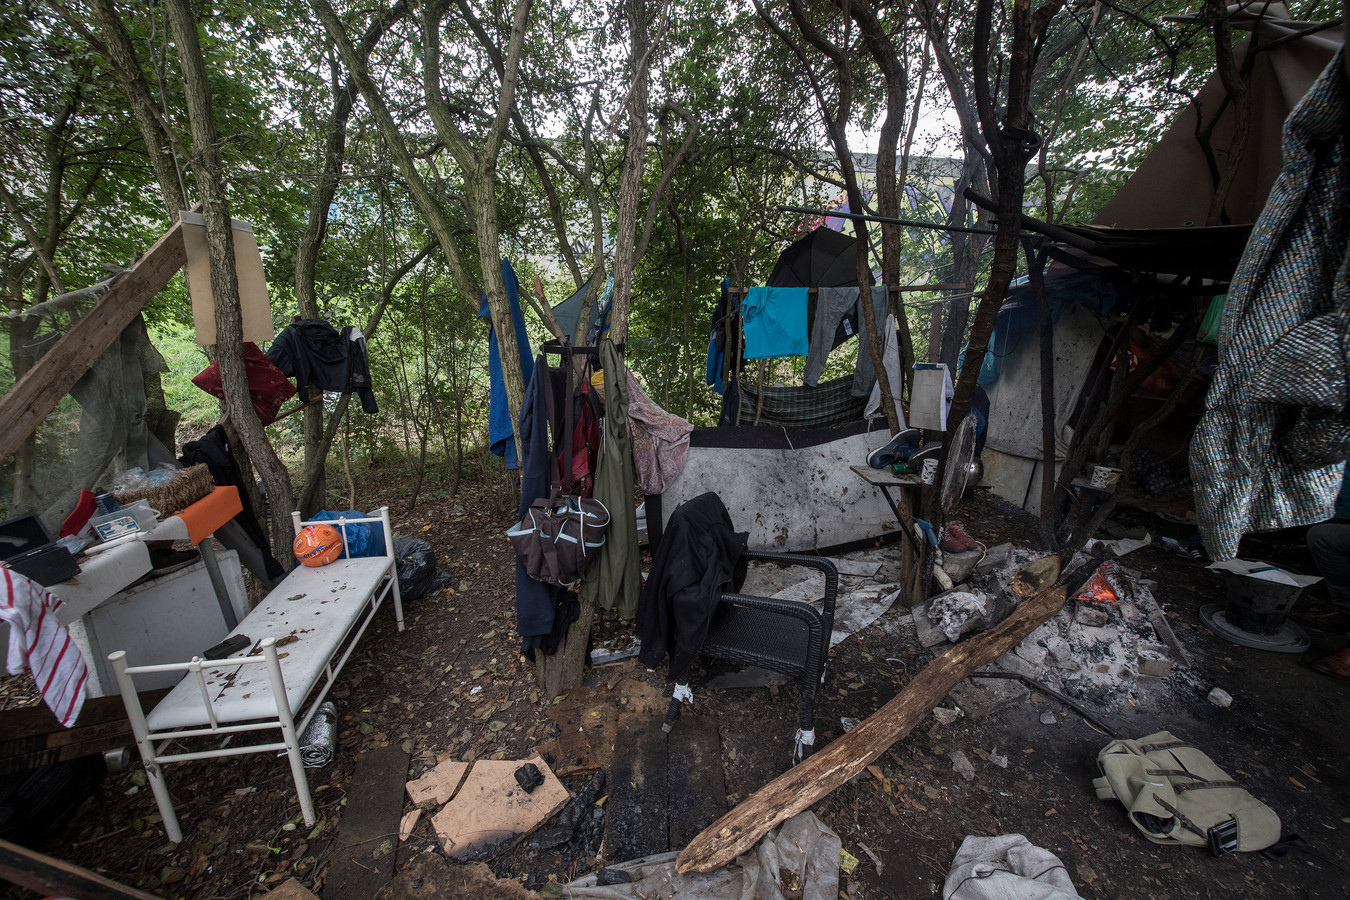 Met het opzetten van een tentenkamp heeft de groeiende groep dakloze arbeidsmigranten in Tiel een gezicht gekregen. Een akelig gezicht waar niet zomaar een oplossing voor is.